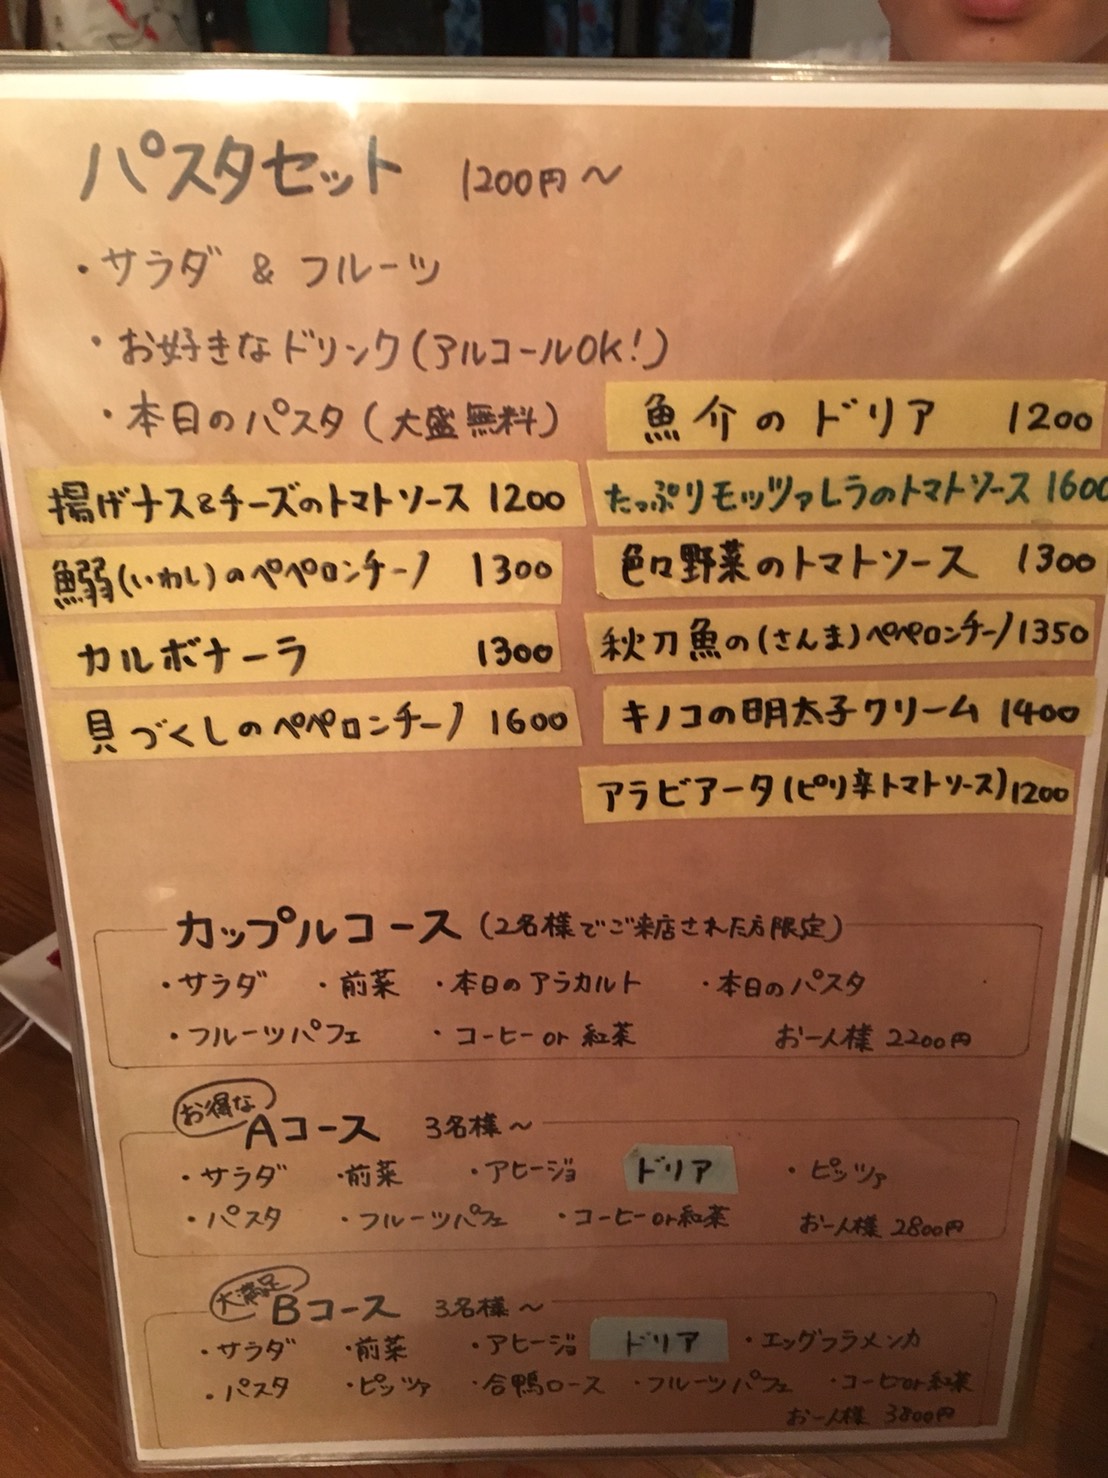 吉祥寺スジガイカフェのディナーメニューの画像